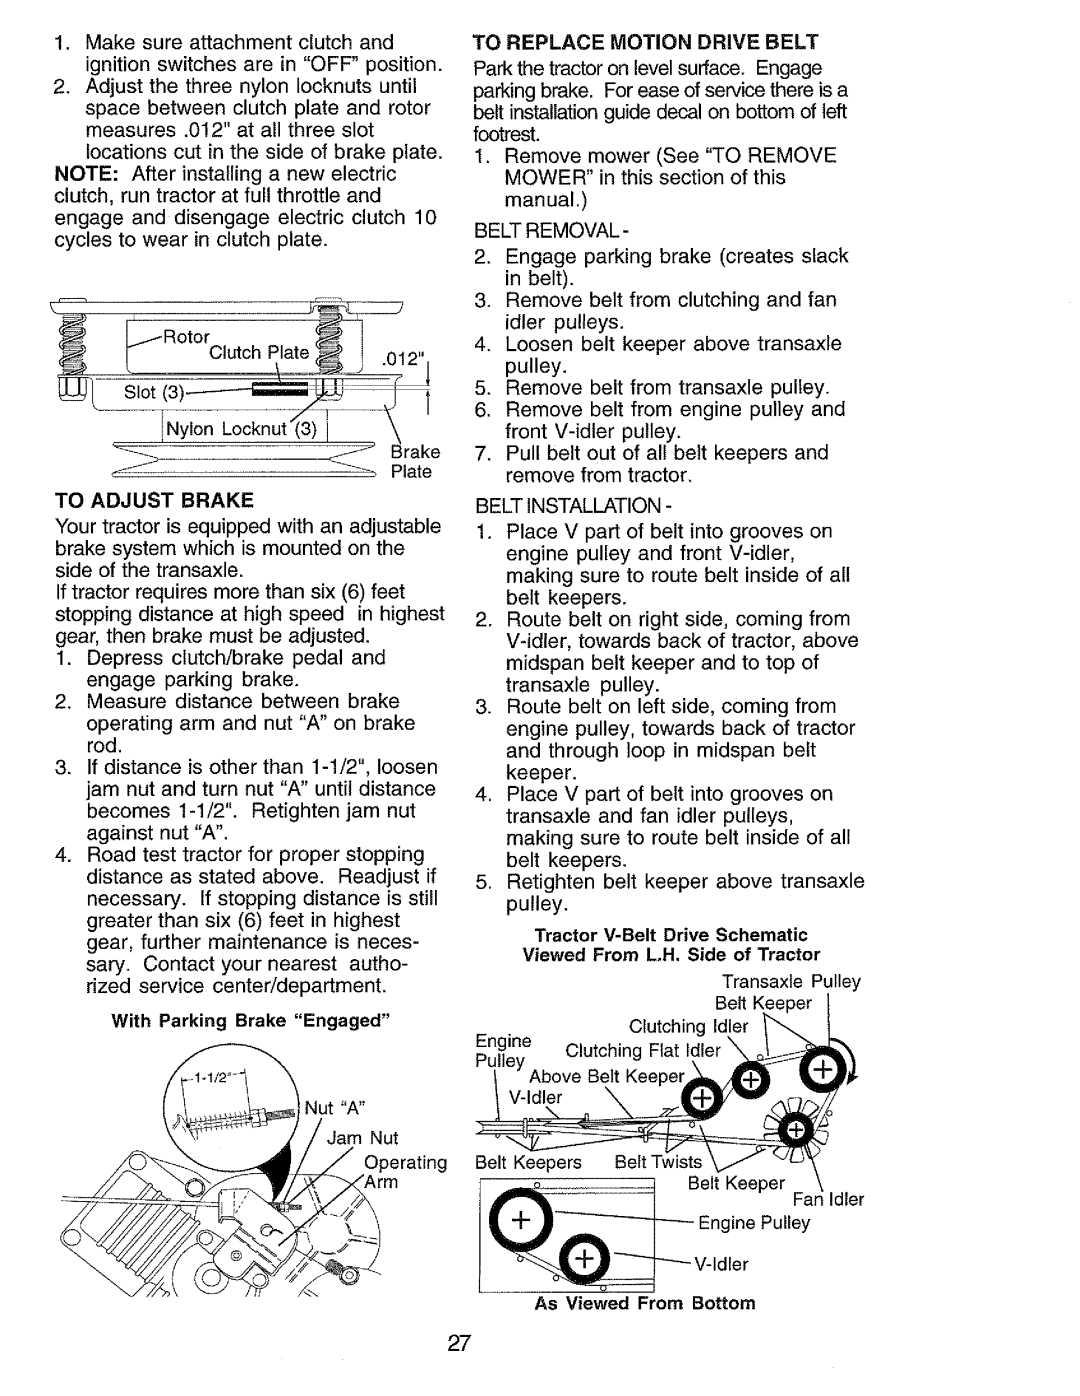 Craftsman 917.273062 owner manual To Adjust Brake, Belt Removal, Belt Installation 